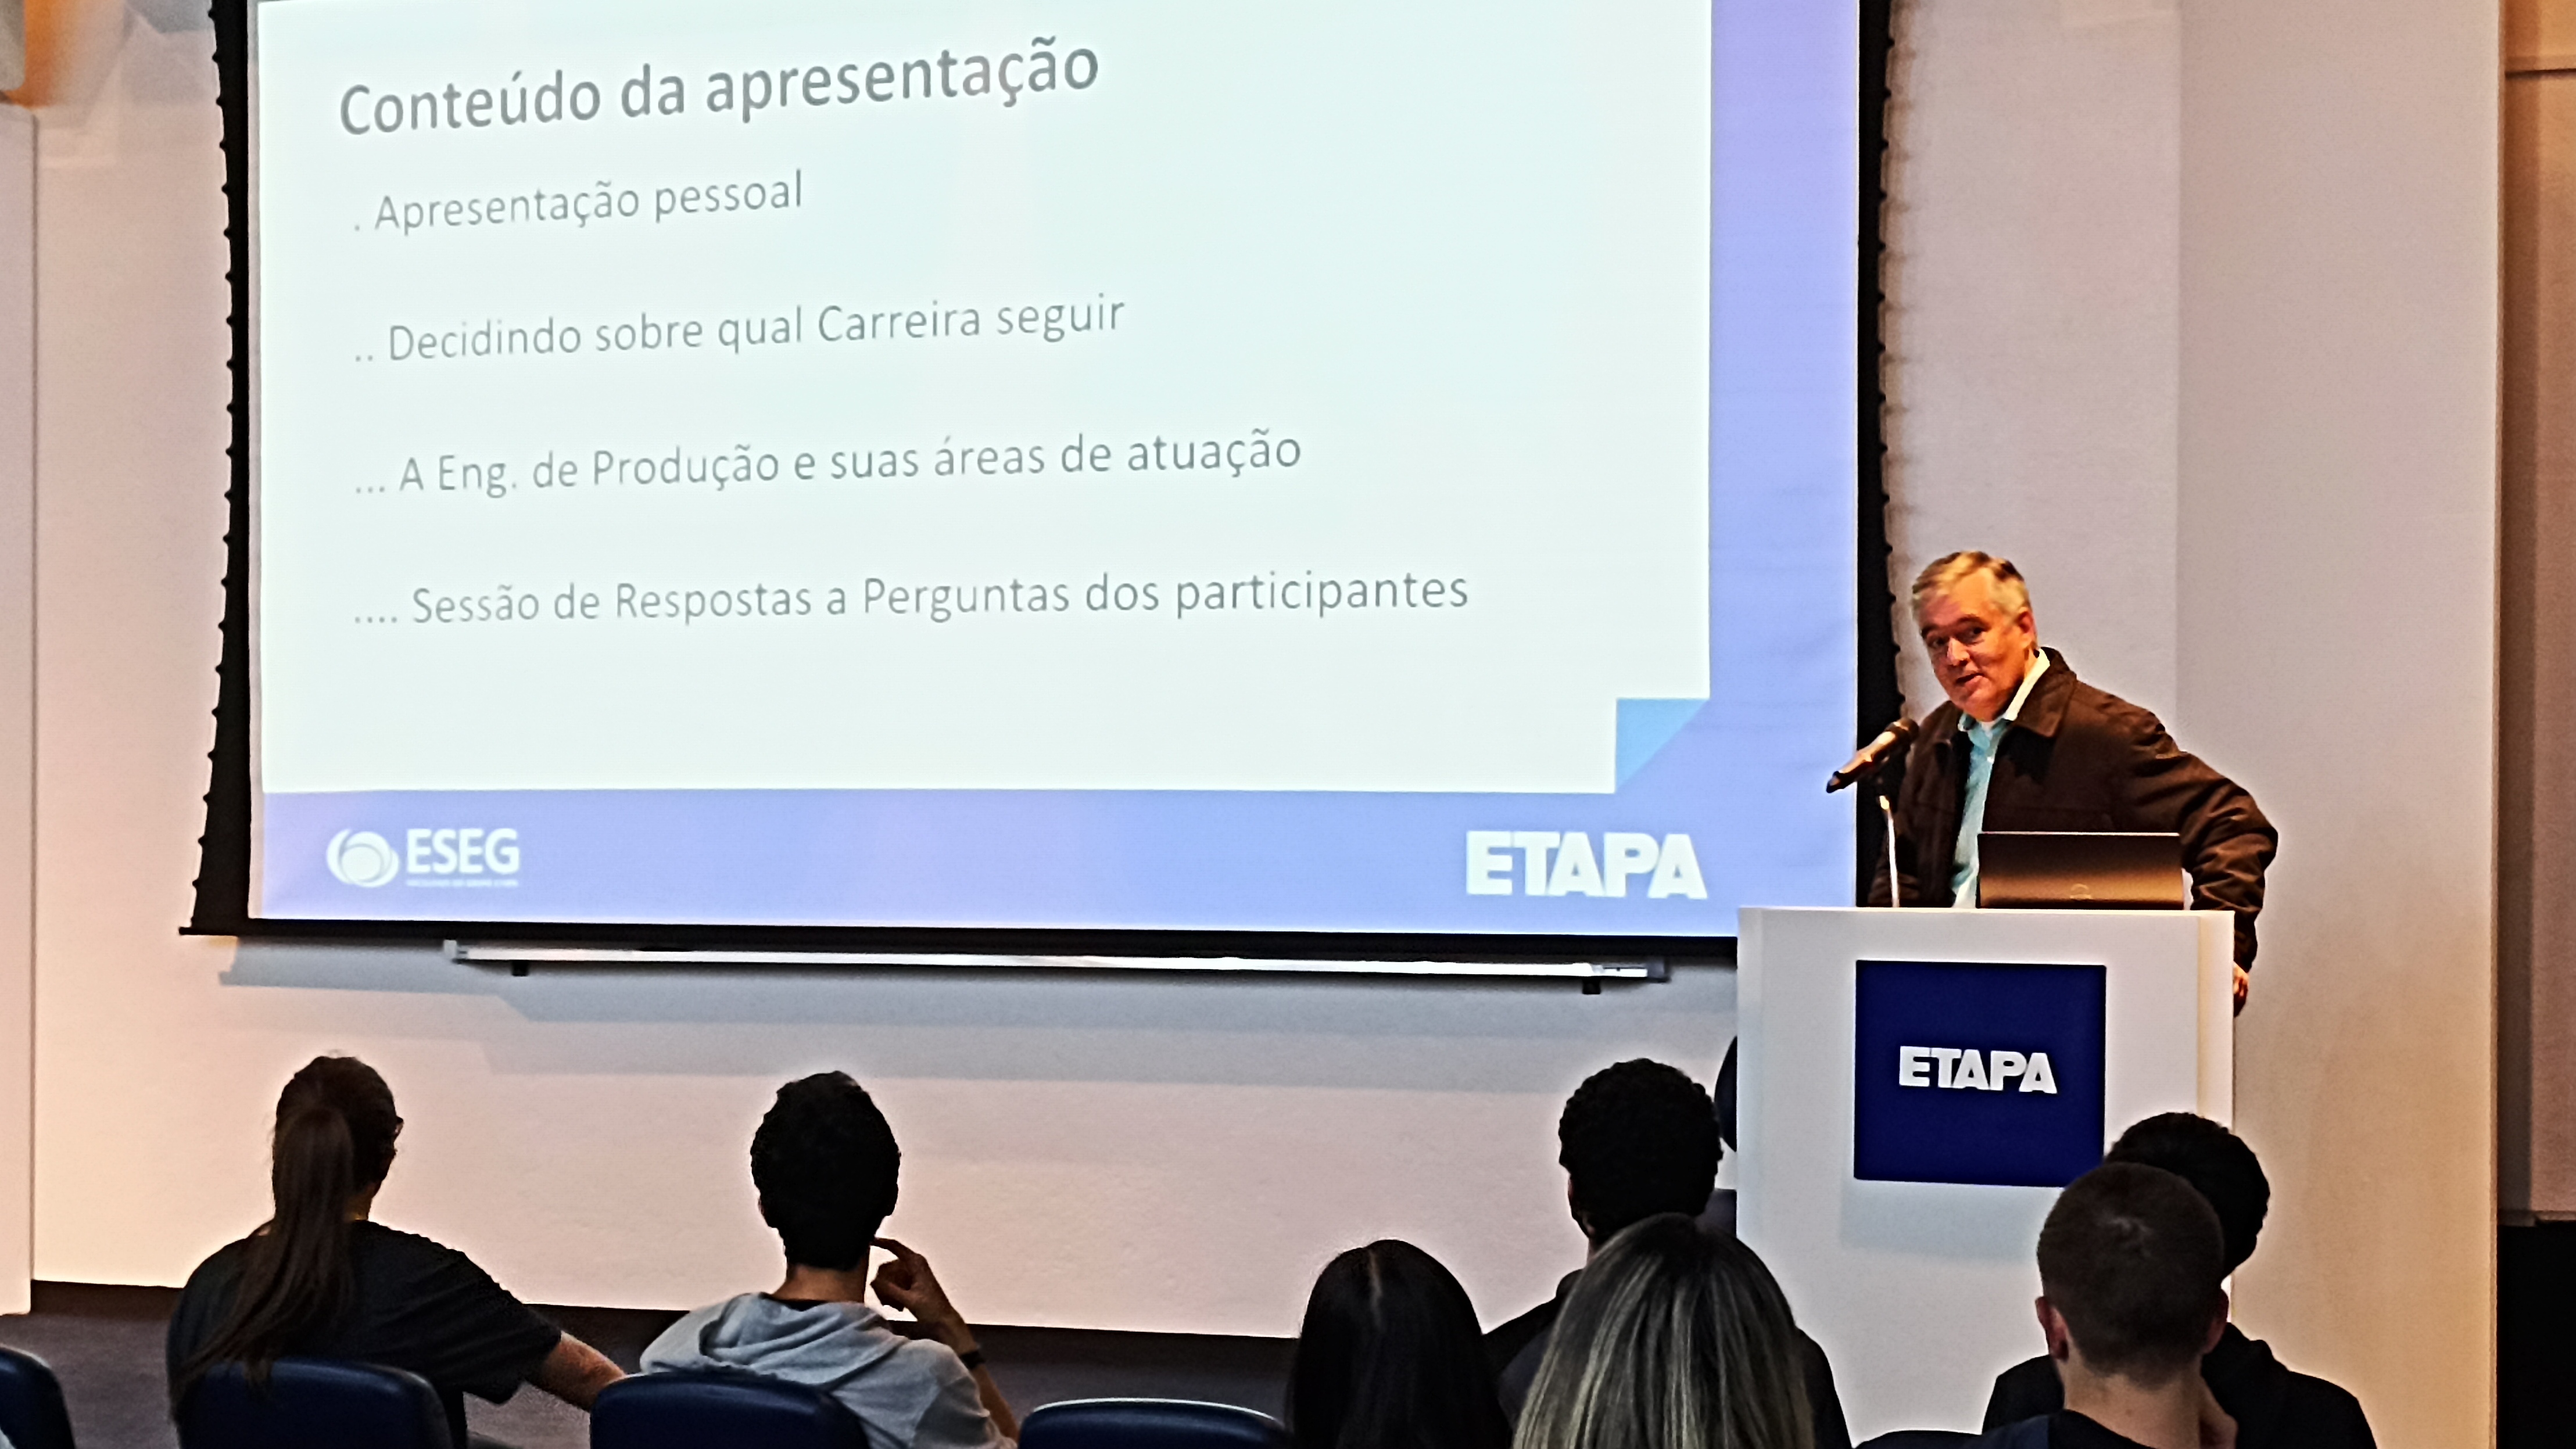 O Curso Etapa realizou o CEOP 2022 – Engenharia de Produção, que abordou temas como a graduação e as áreas de atuação dessa carreira.